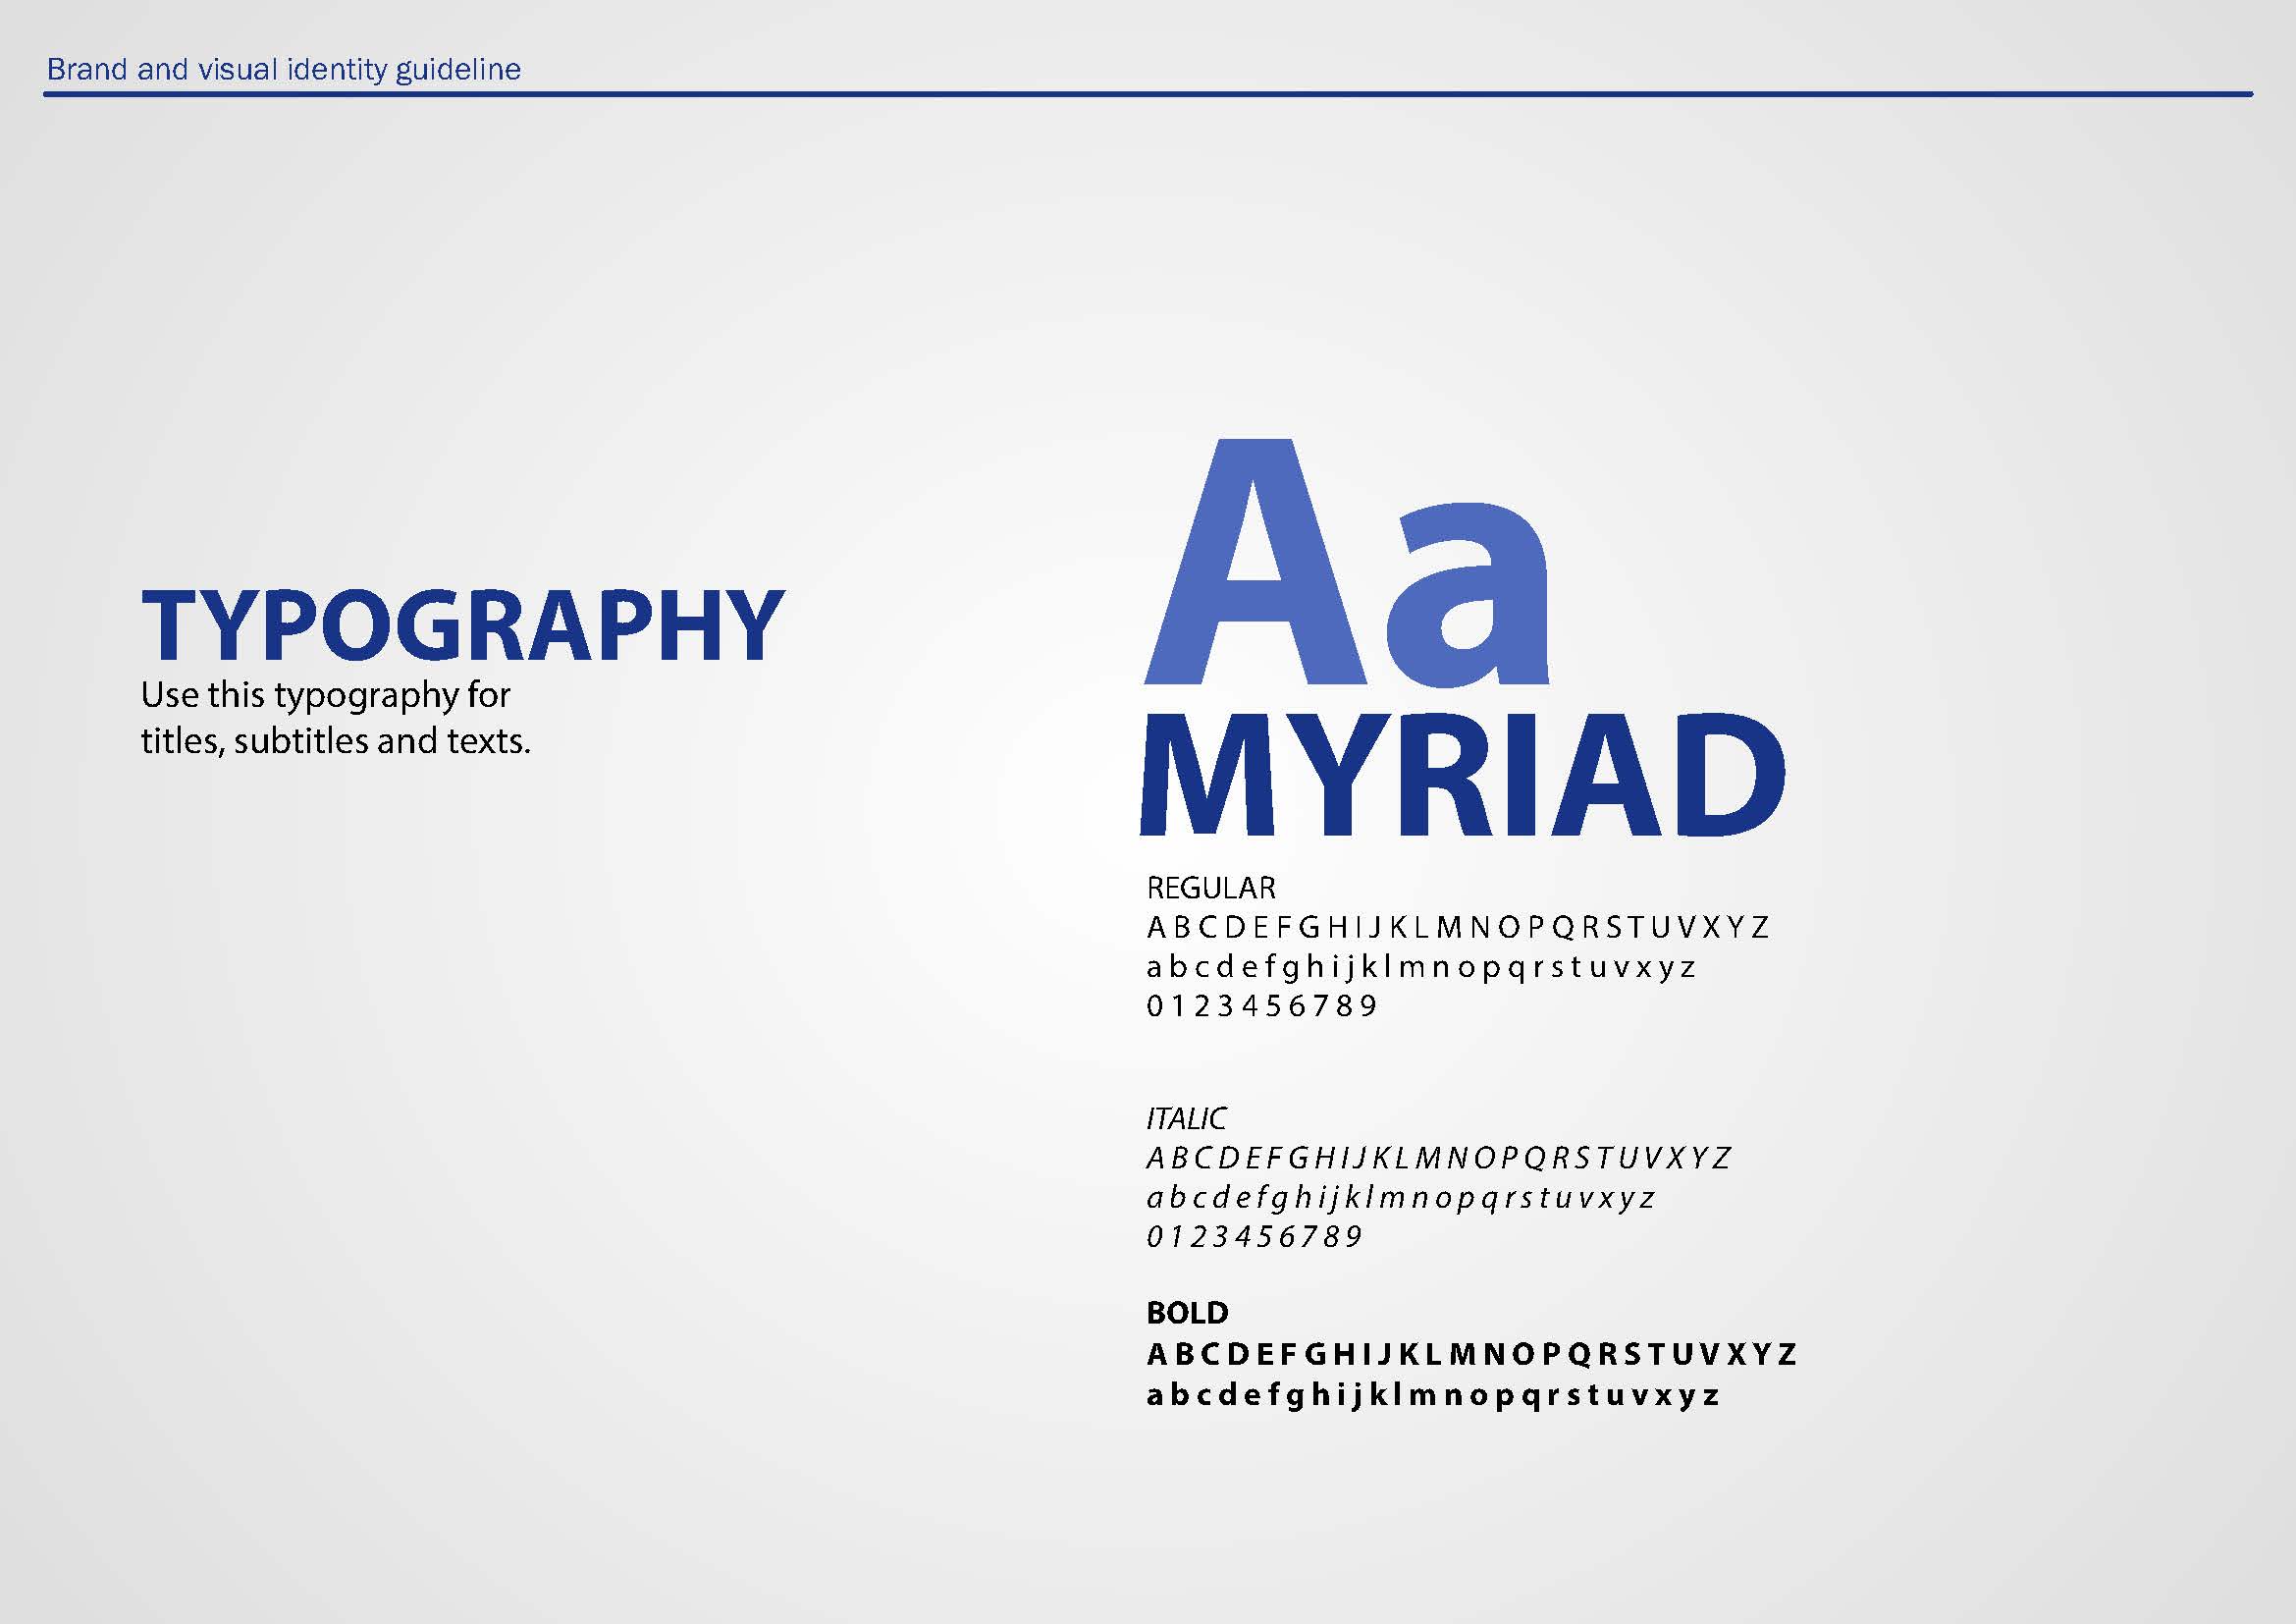 LBrand Typography 2